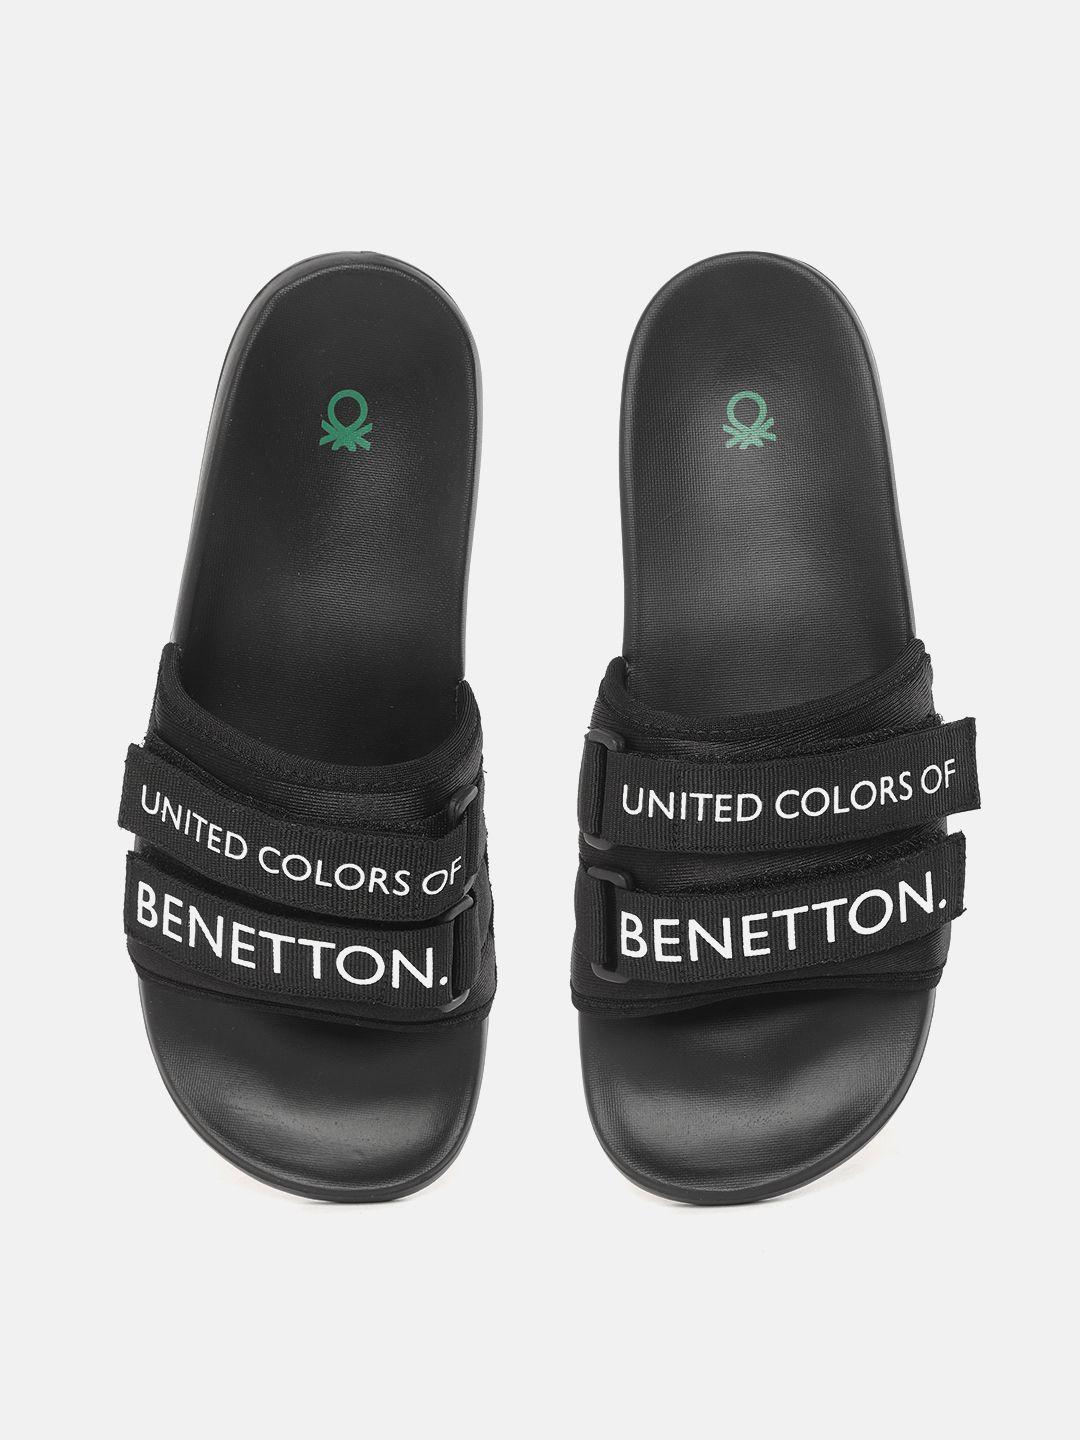 united colors of benetton men black & white brand logo print sliders